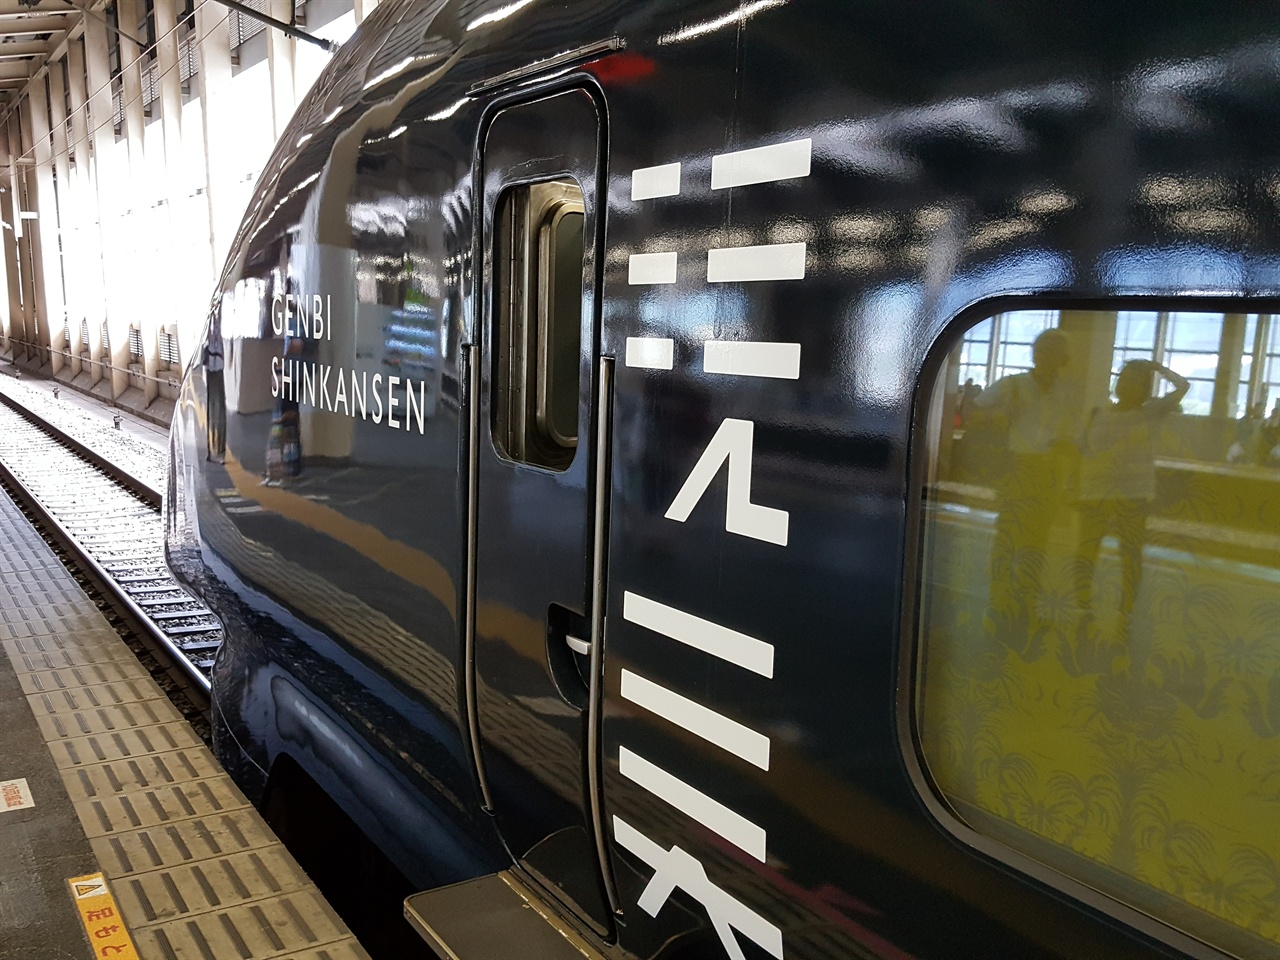  아름다운 예술작품 열차 겐비신칸센의 외관.